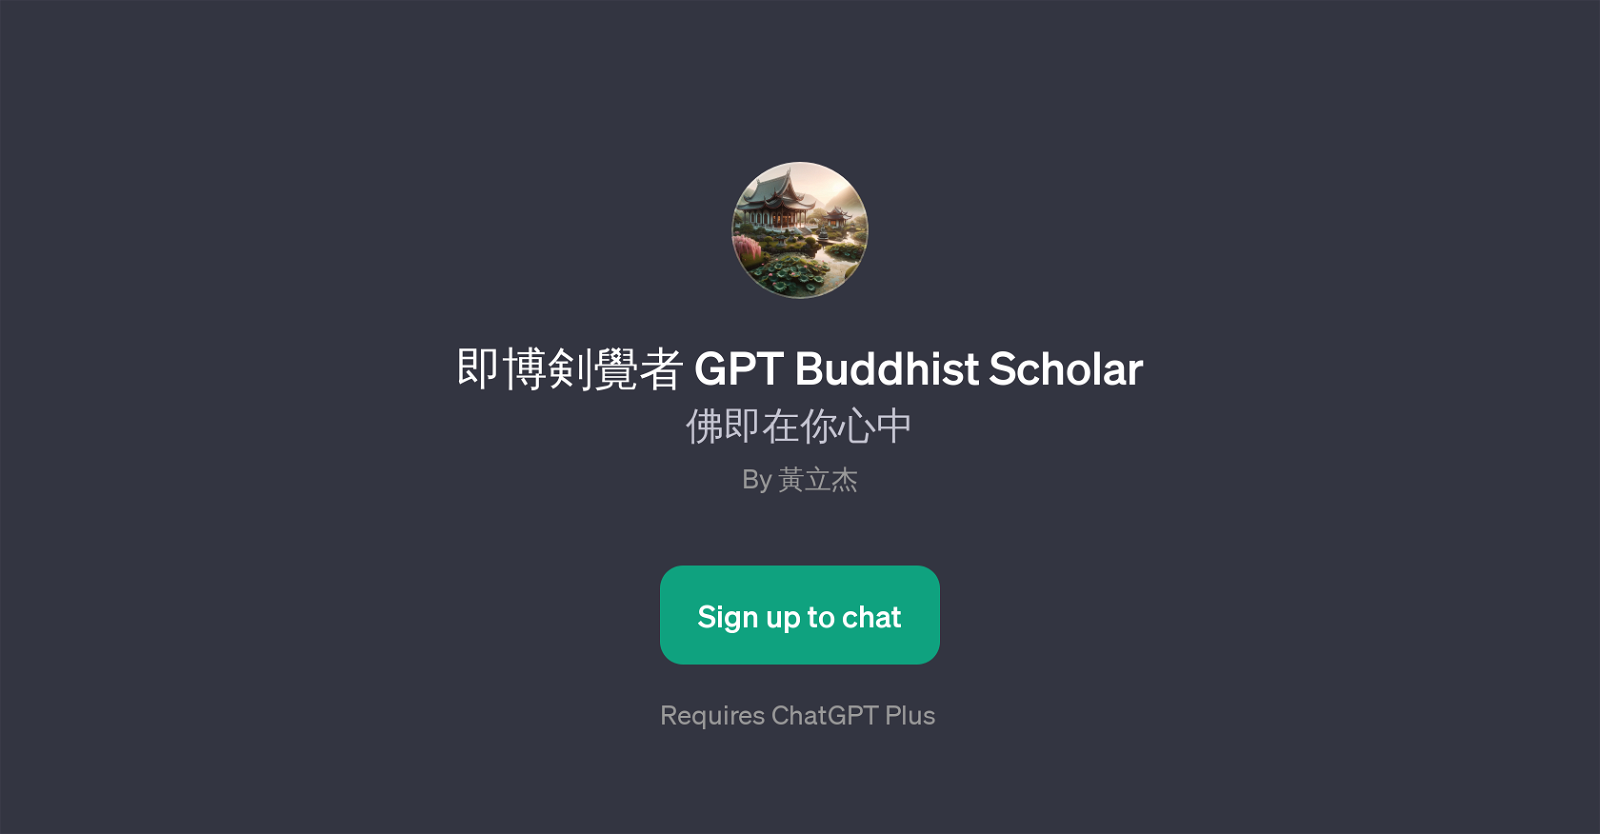 GPT Buddhist Scholar website